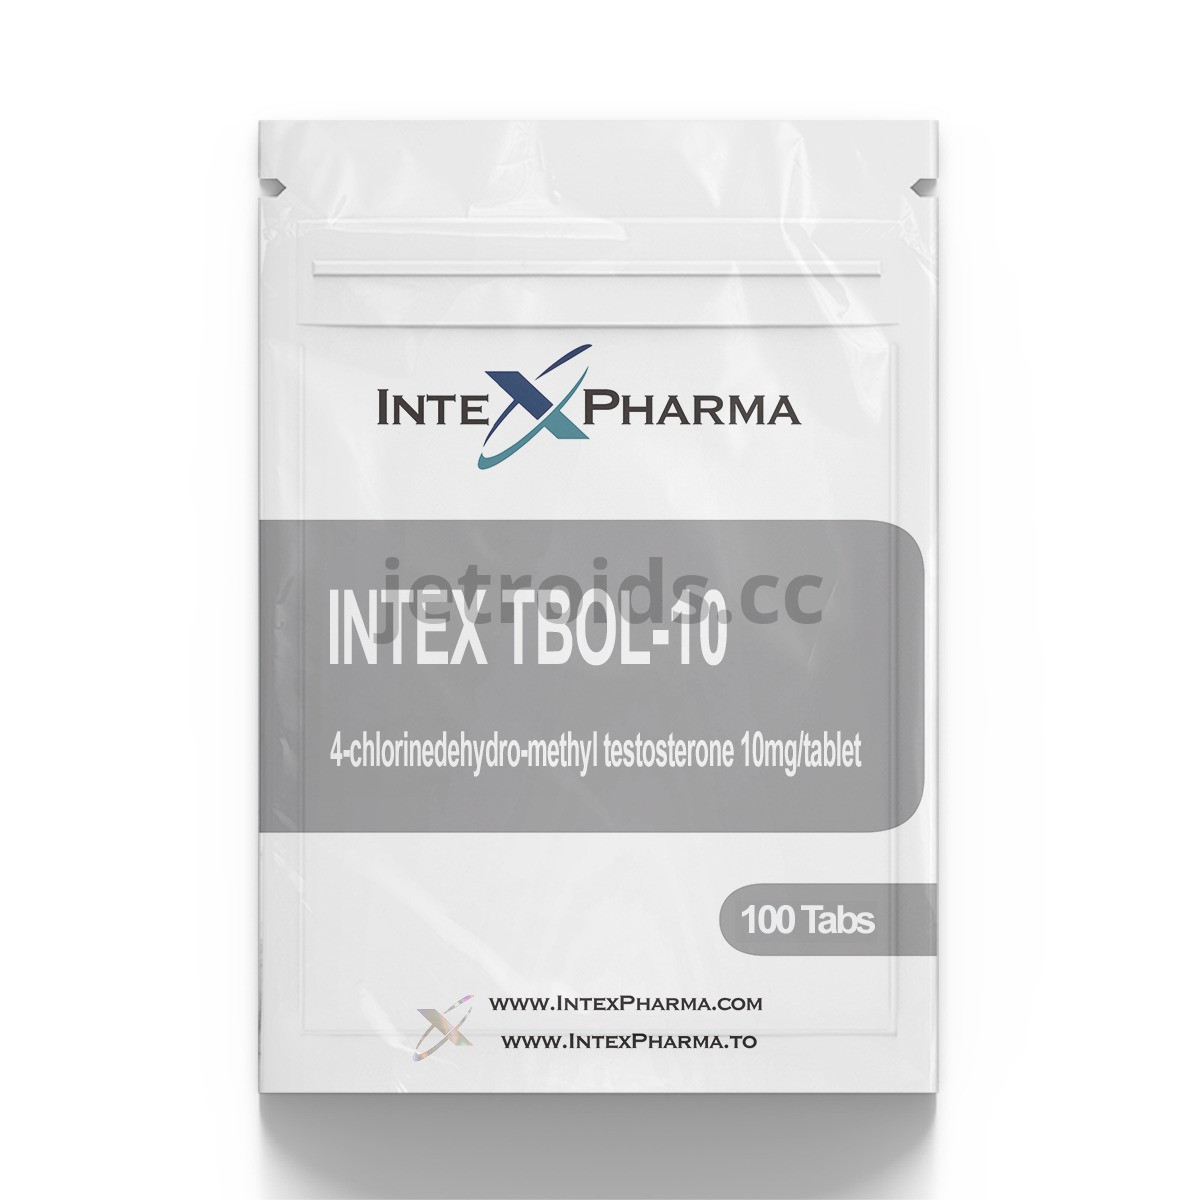 IntexPharma Intex TBOL-10 Product Info